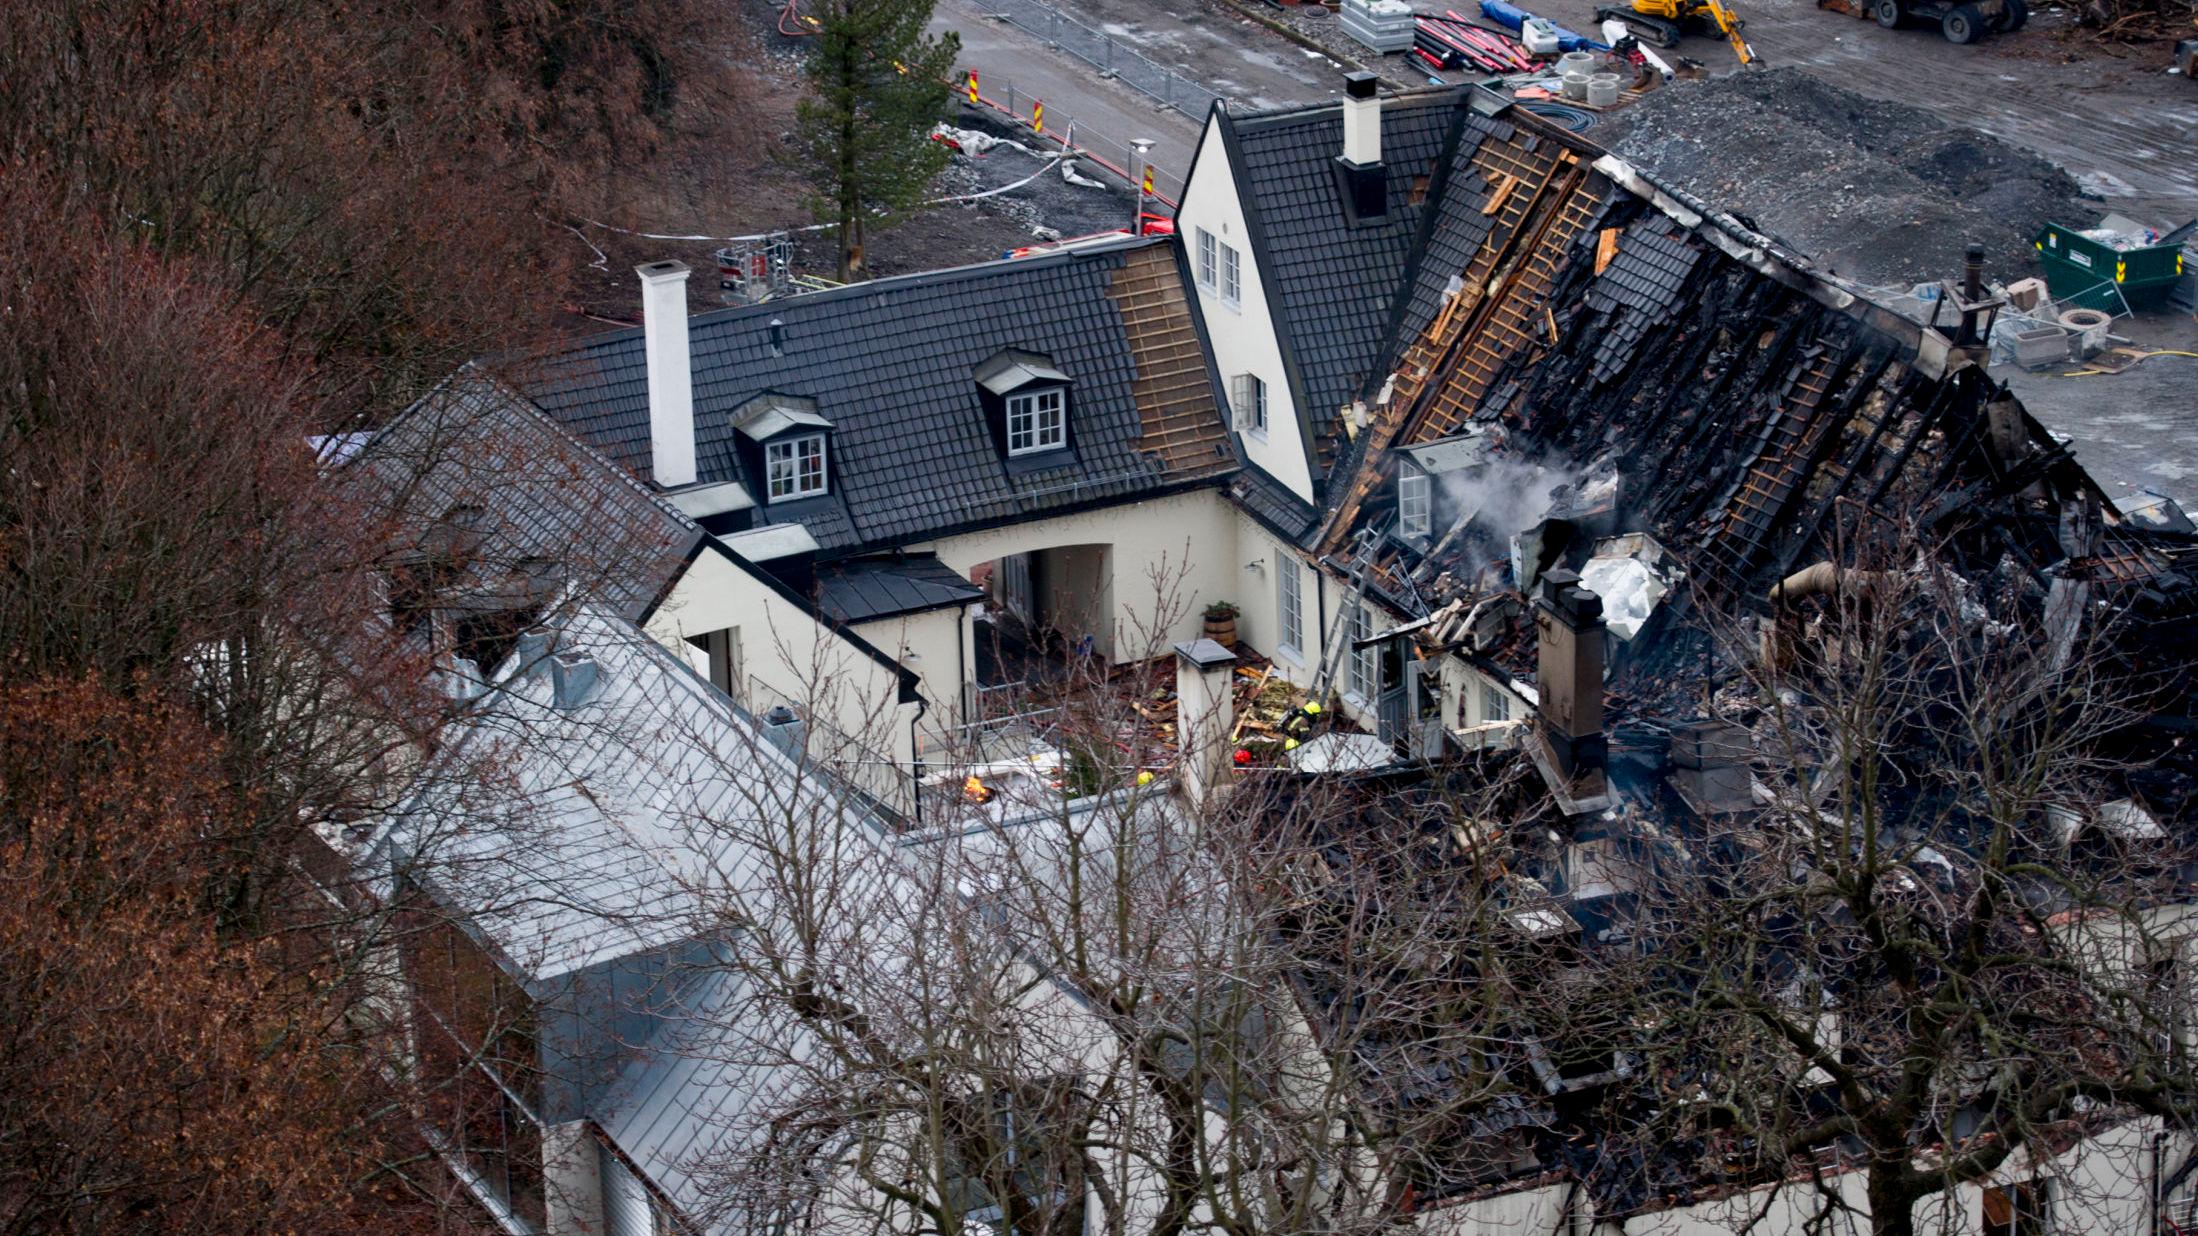 RESTER: Slik så gården ut etter at brannen var slukket brannen. Foto: Jon Olav Nesvold / NTB scanpix